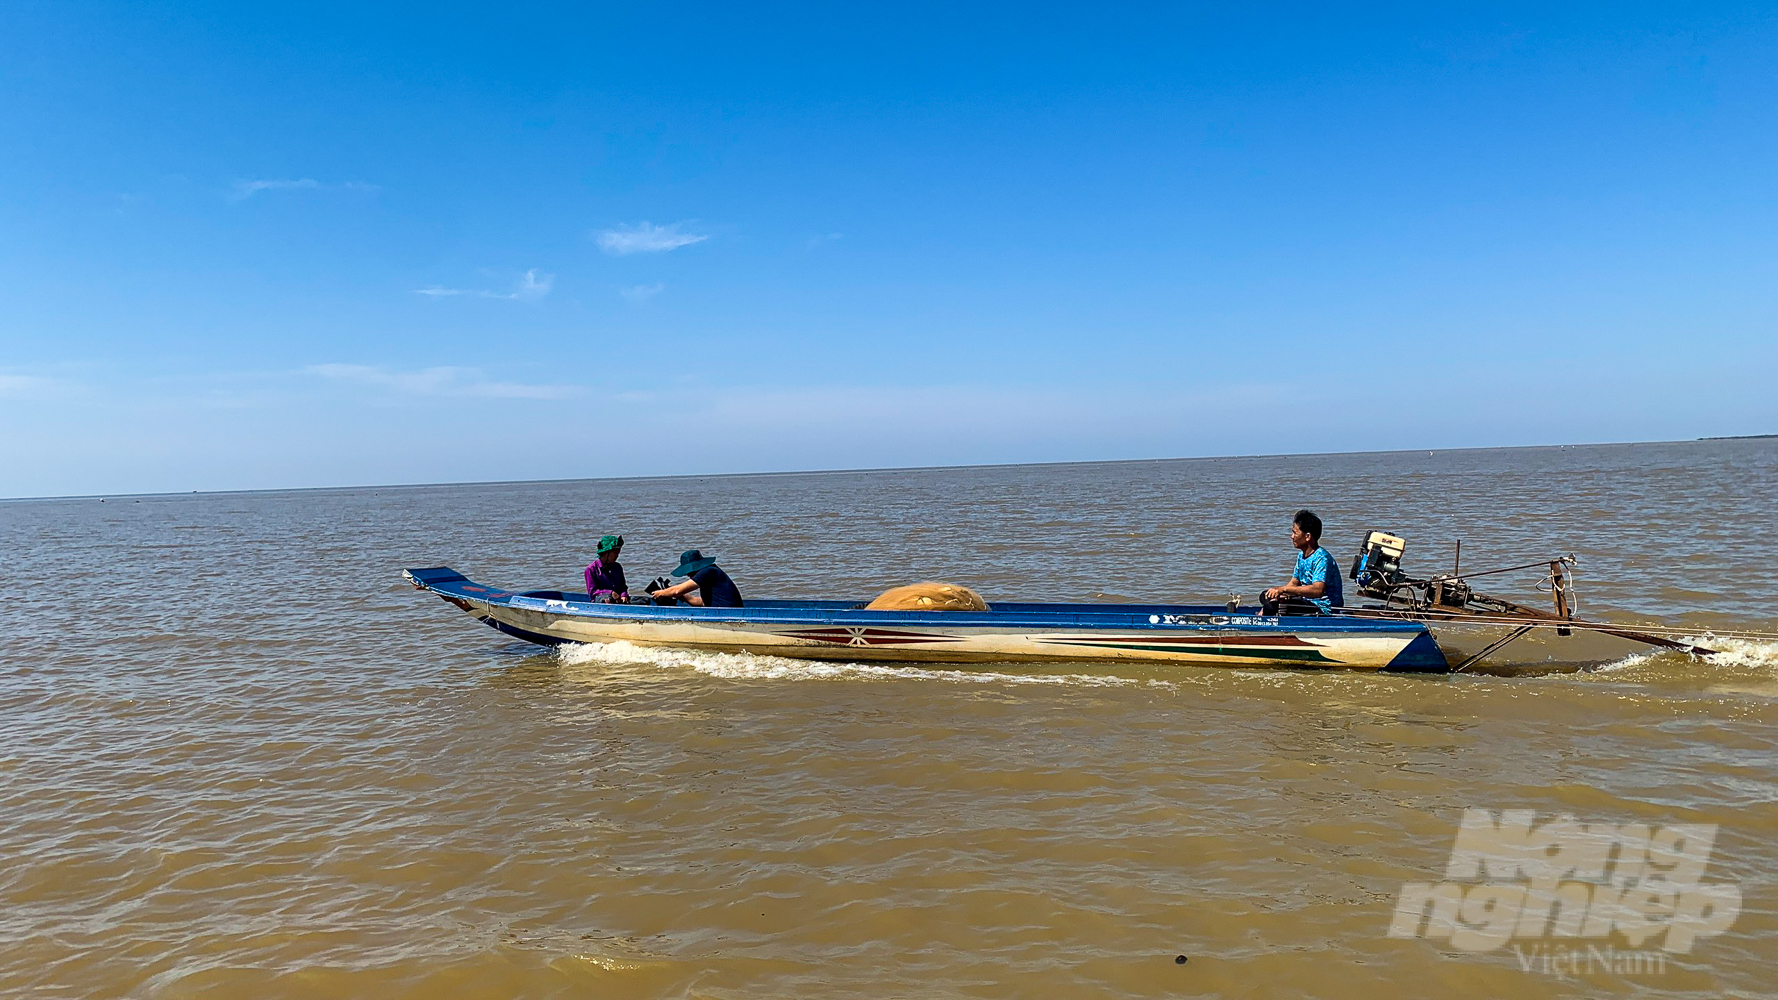 Hầu hết mực nước các trạm trên lưu vực sông Mekong đều có xu thế giảm và thấp hơn so với trung bình nhiều năm. Ảnh: Kim Anh.